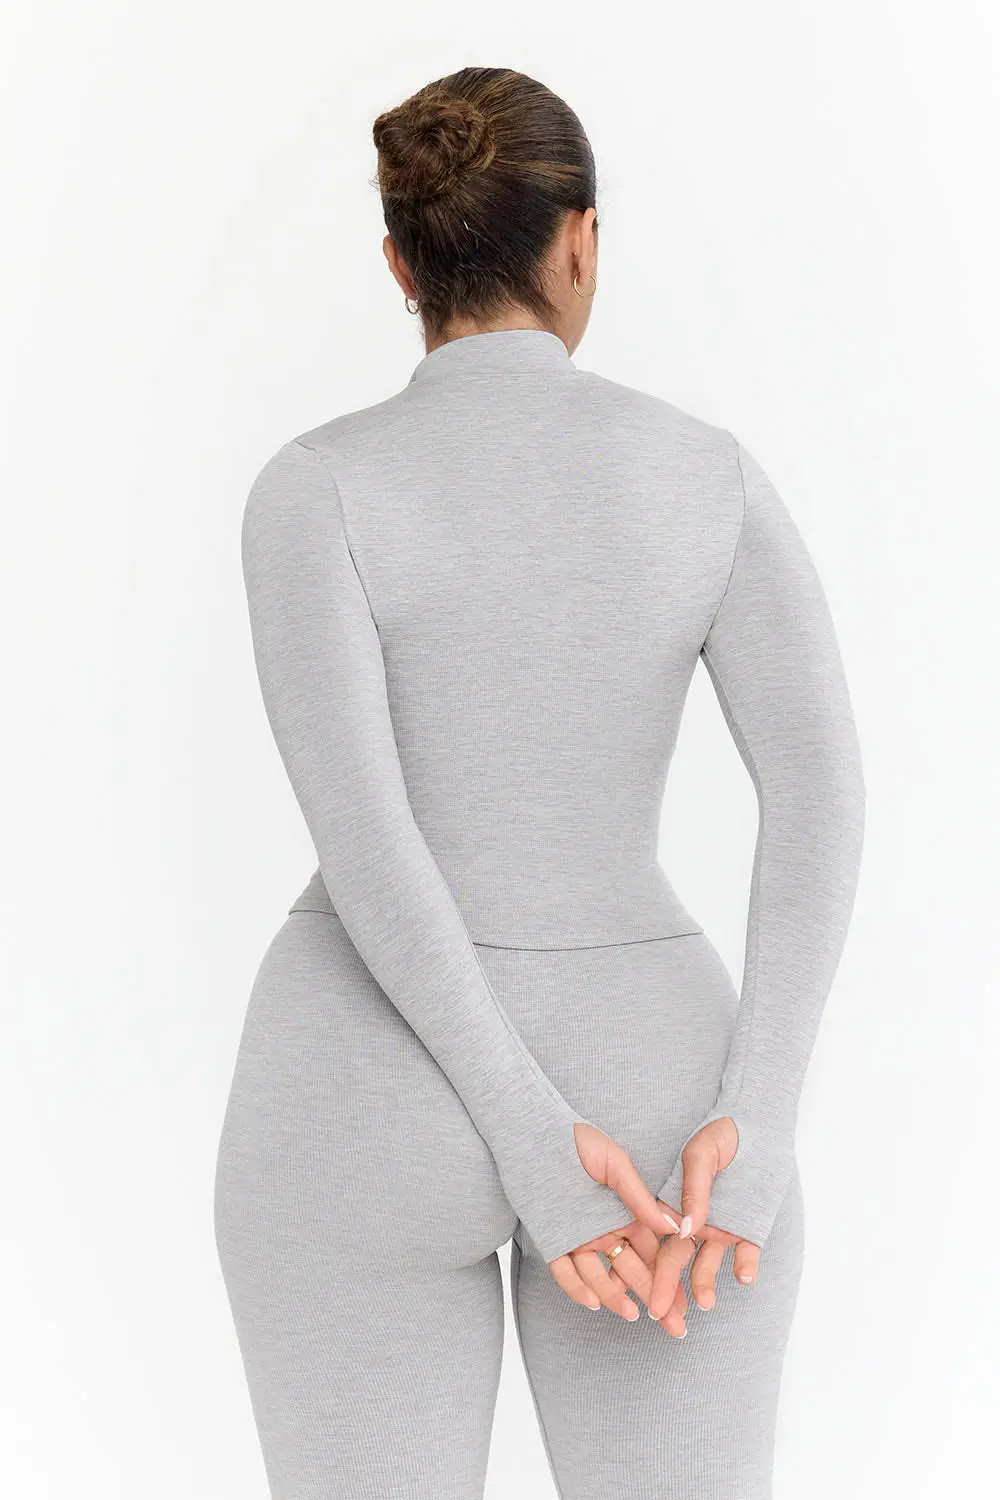 Großhandel Damen Activewear Daumengrauben-Yoga-Jacken Nylon weiche gerippte Oberteile nahtlose Slim Fit Reißverschluss-Langeärmelige Fitnessjacke